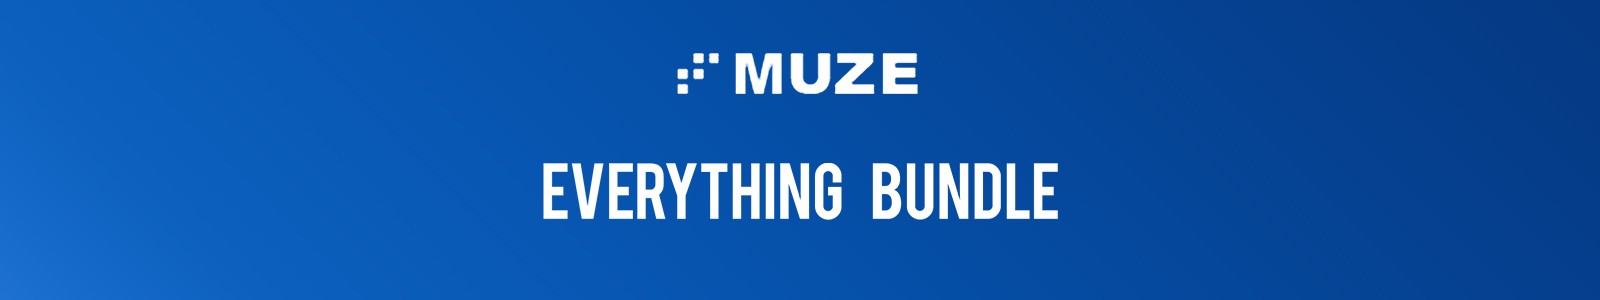 Muze Everything Bundle